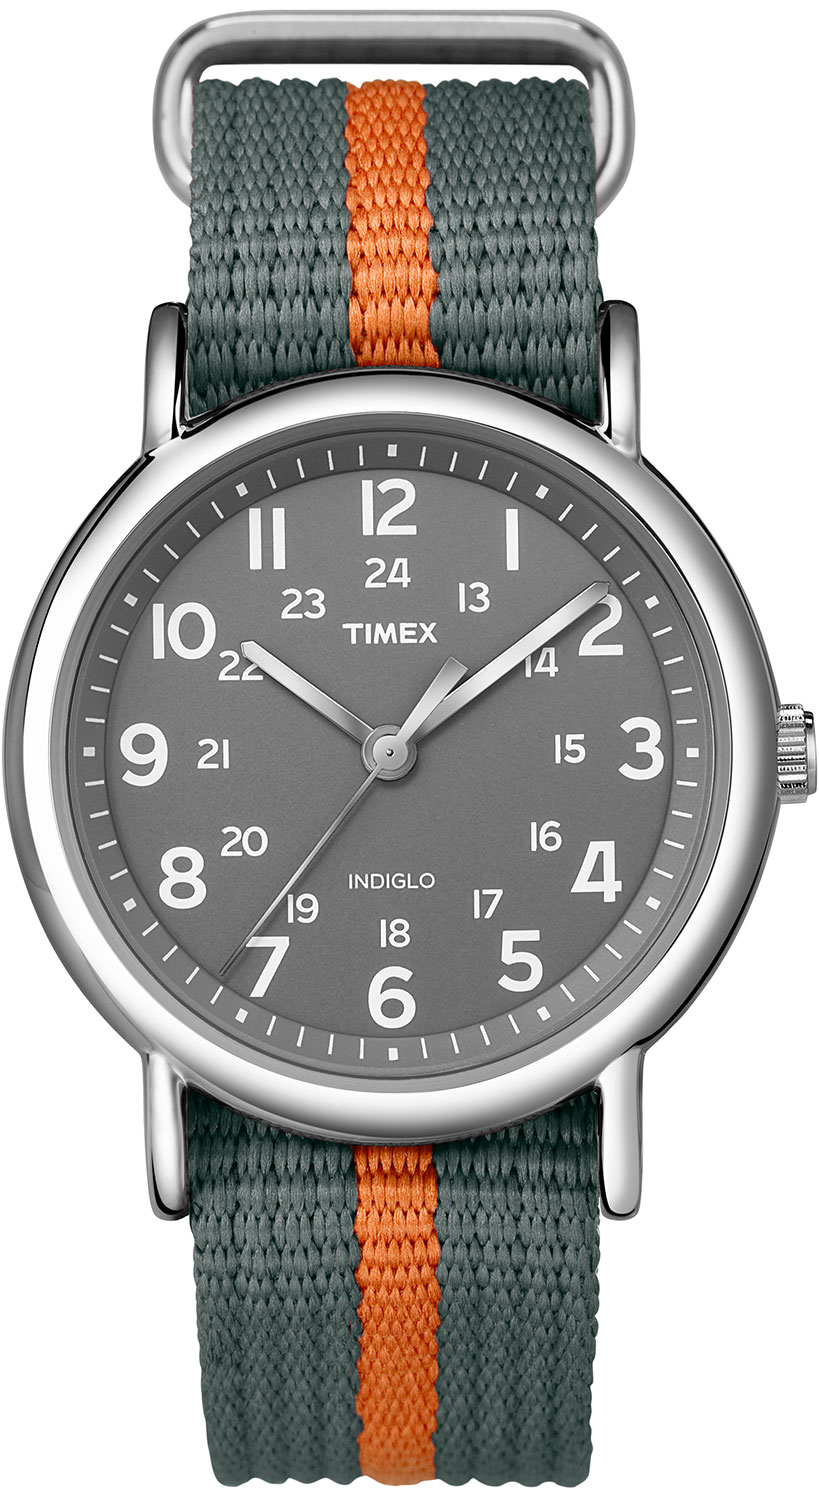 Наручные часы Timex T2N649 — купить в интернет-магазине AllTime.ru по лучшей цене, фото, характеристики, инструкция, описание